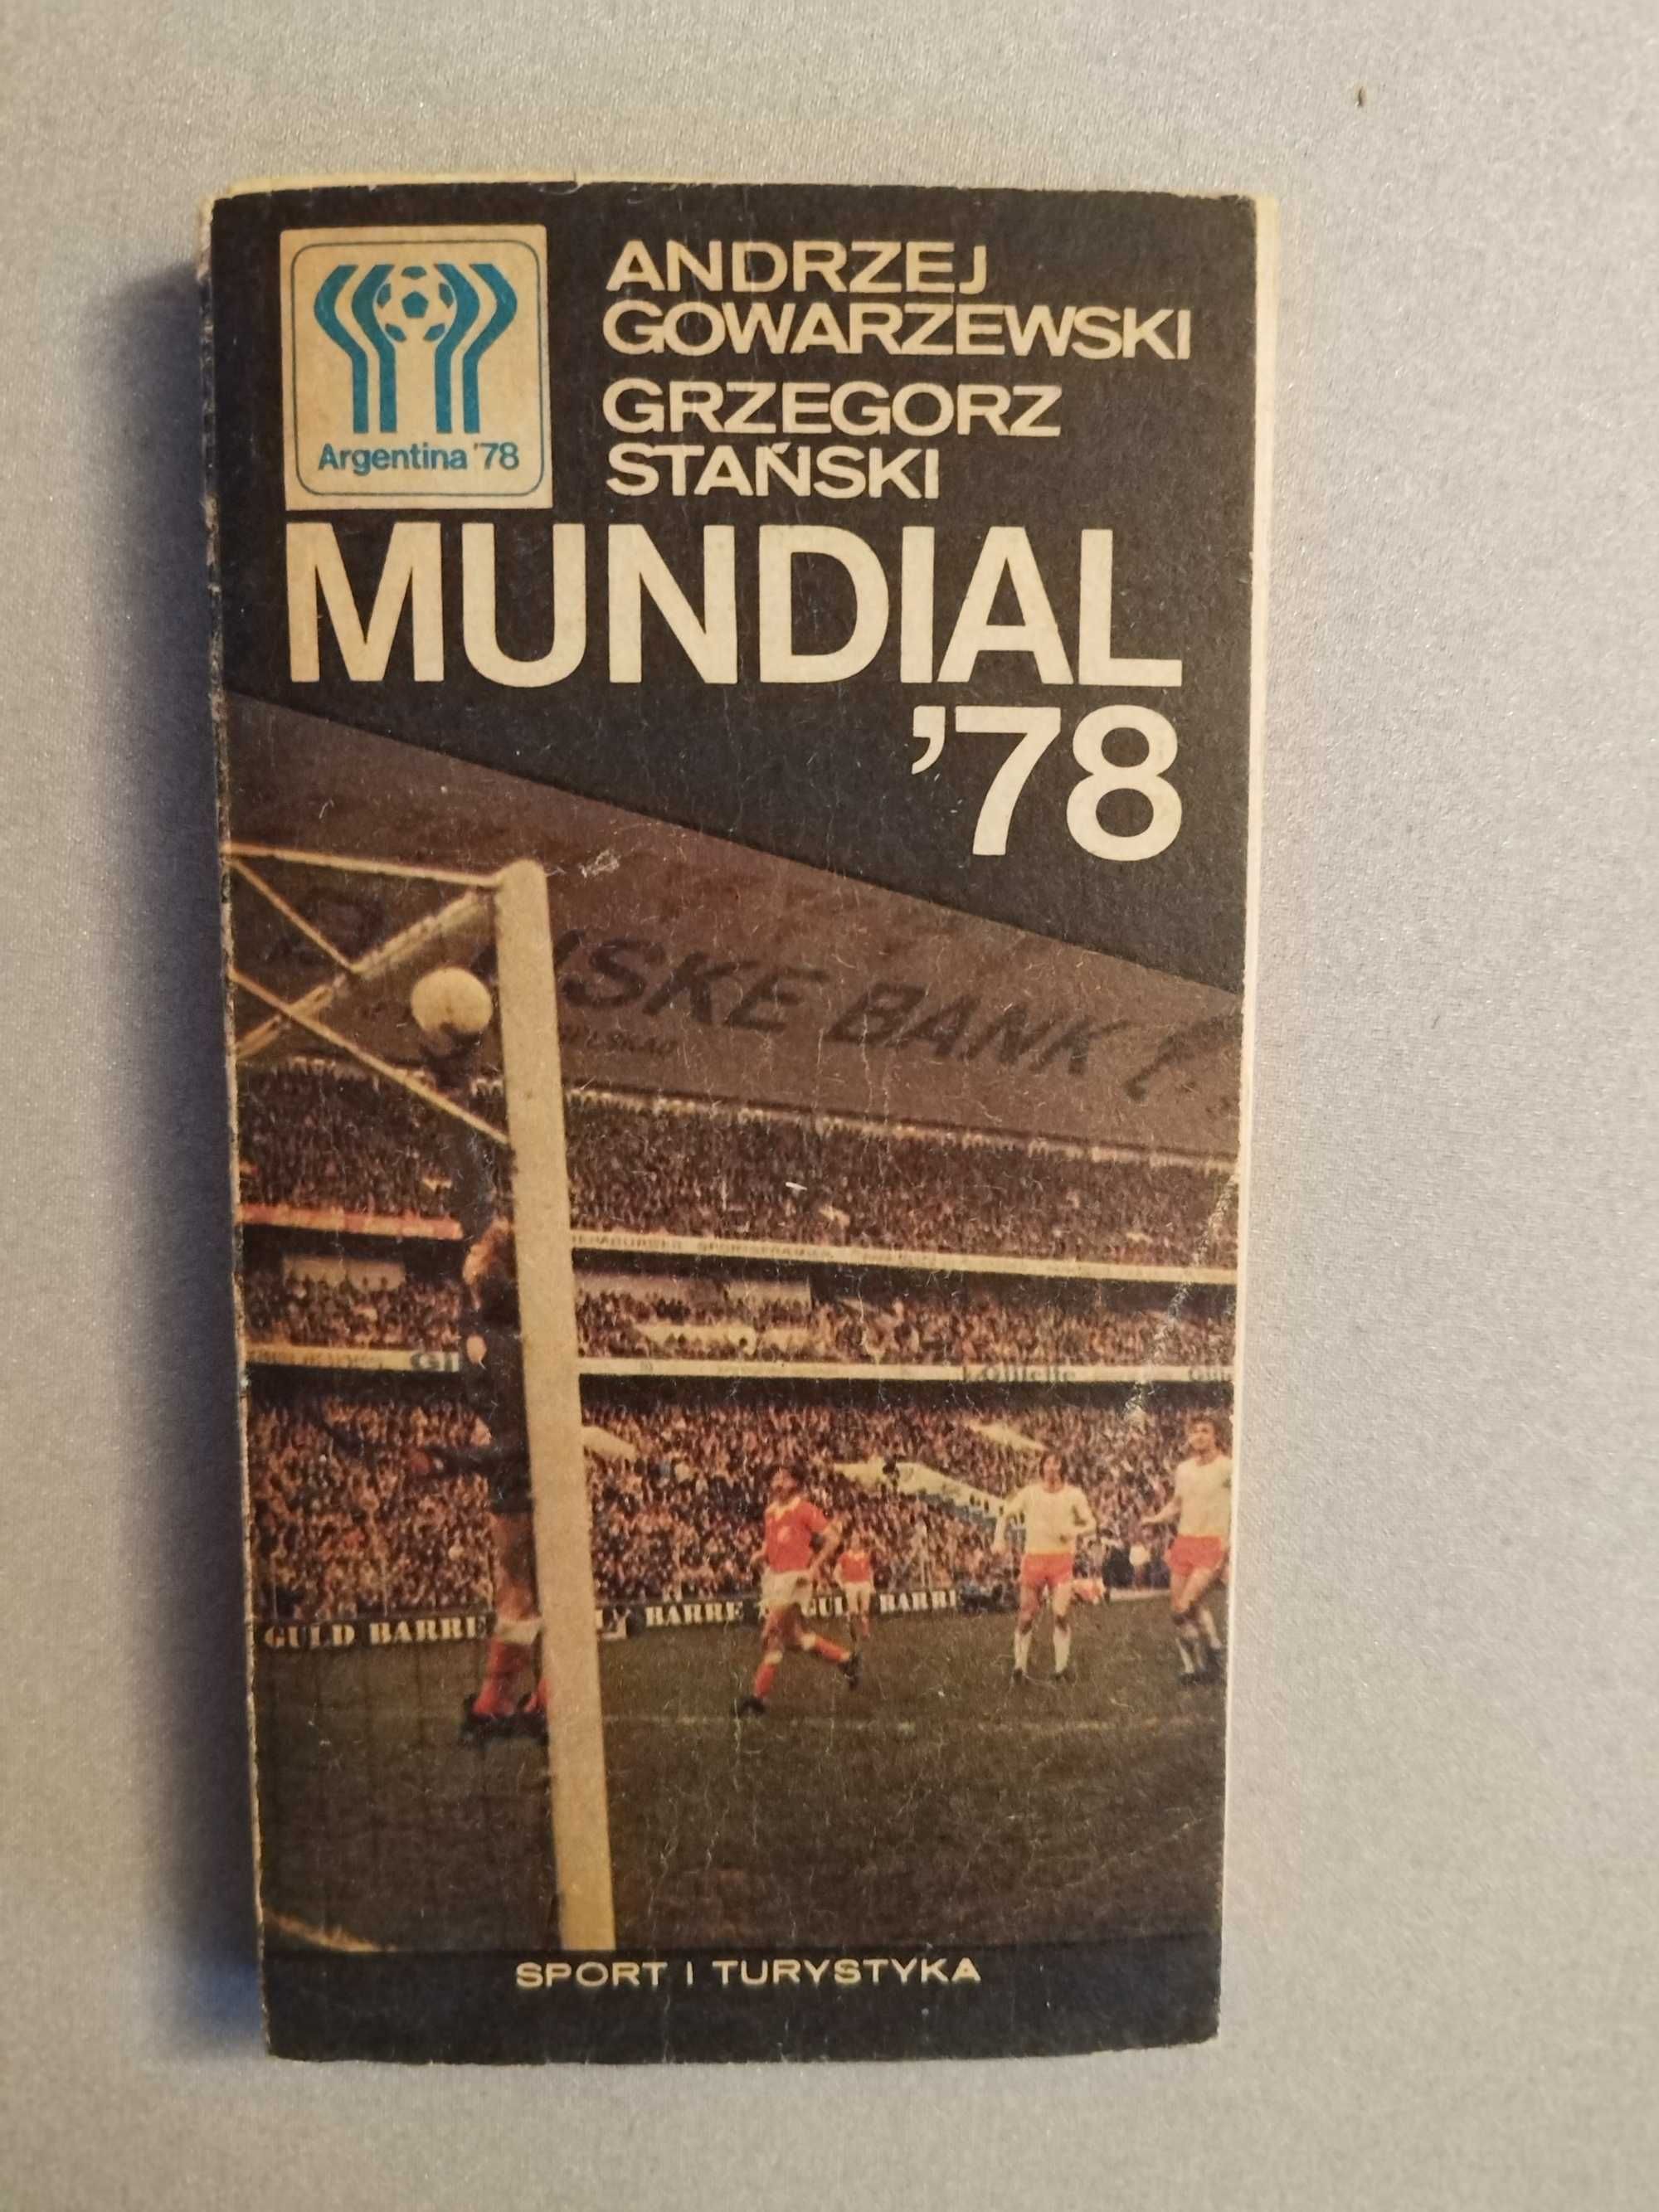 MUNDIAL 78' A. Gowarzewski, G. Stański